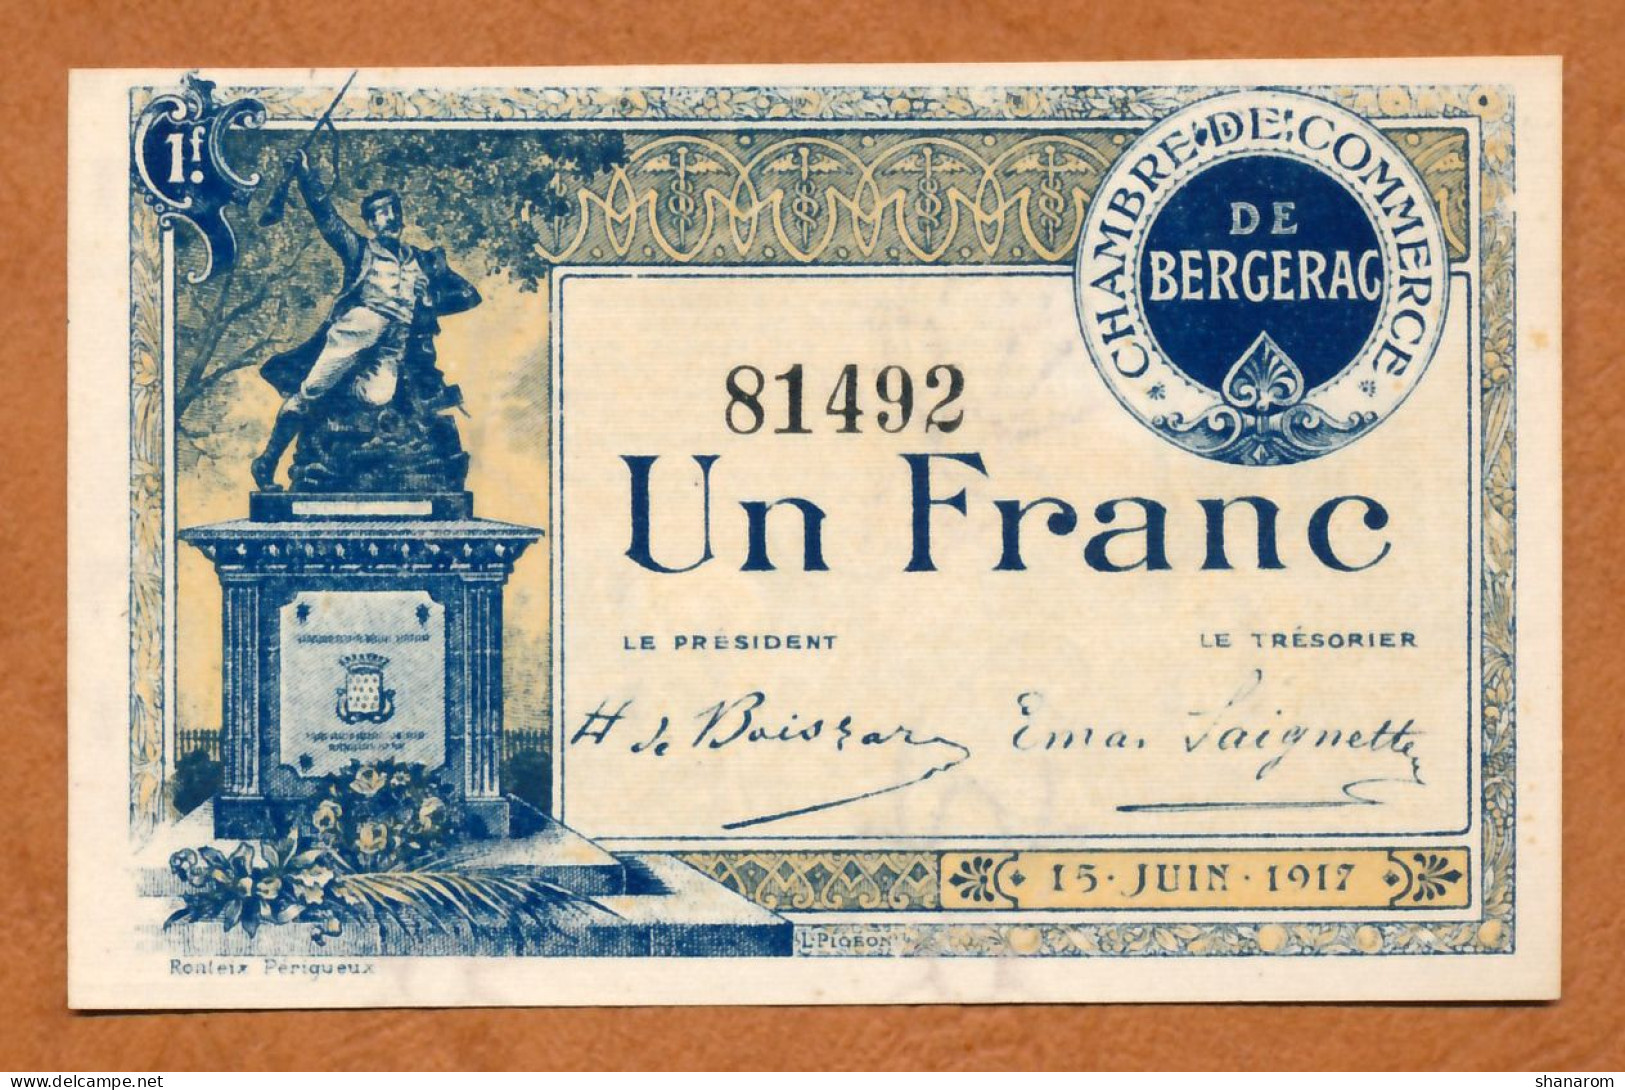 1914-18 // C.D.C. // BERGERAC (Dordogne 24) // Juin 1917 // Un Franc // Filigrane Abeilles - Cámara De Comercio